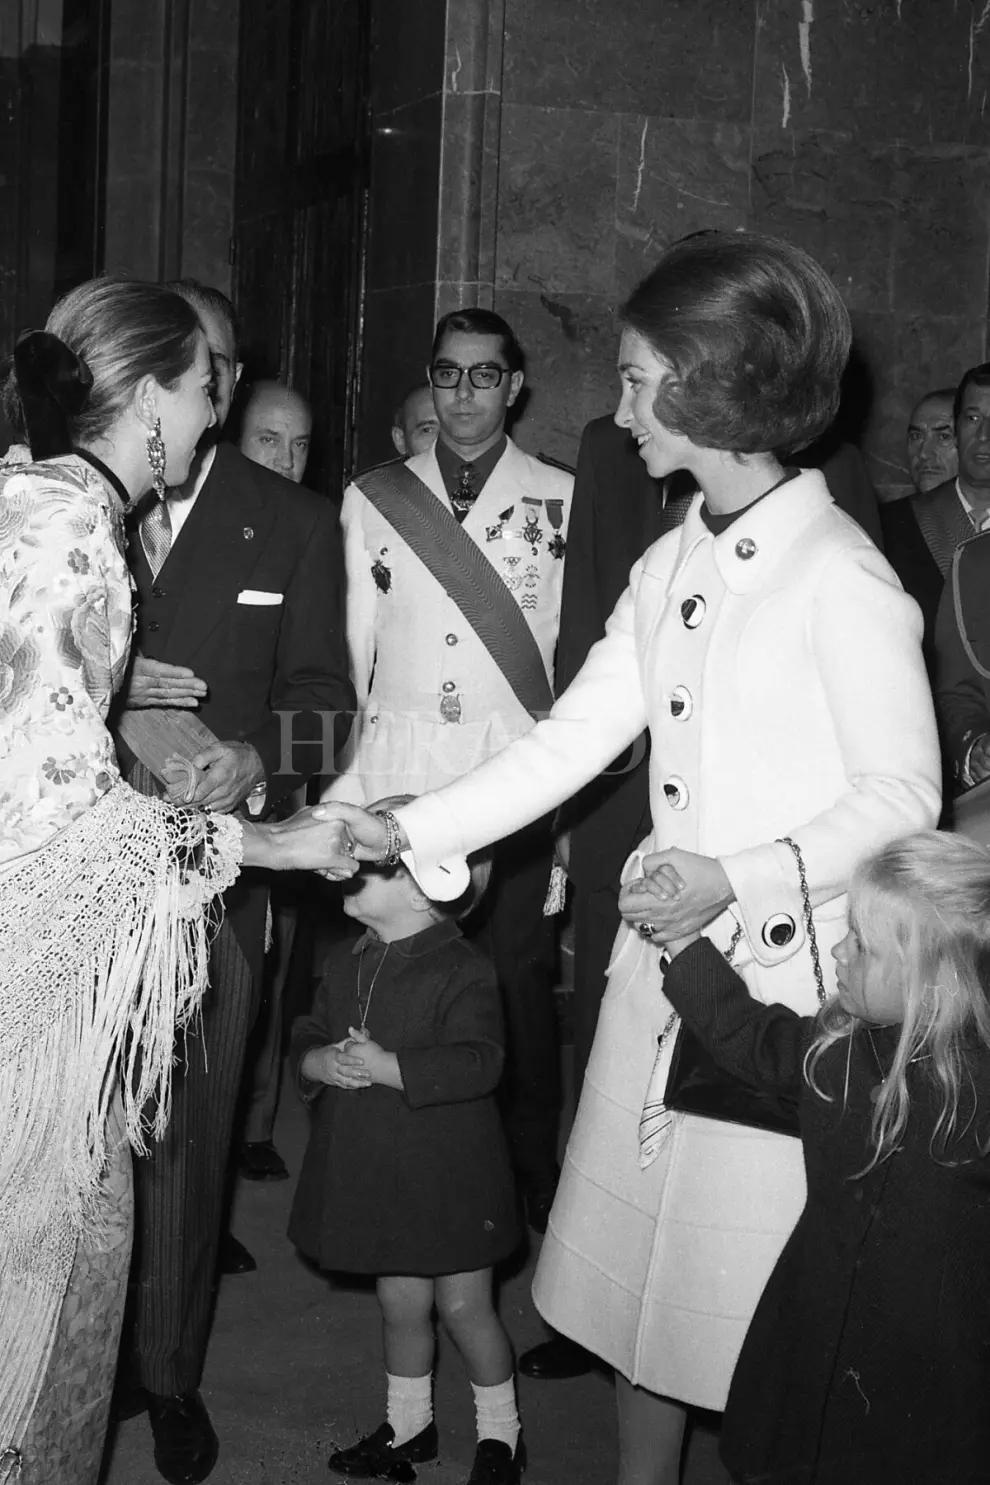 Primera visita de la Familia Real a Zaragoza tras la proclamación de Juan Carlos I como rey de España. Visita realizada el 14 de diciembre de 1975